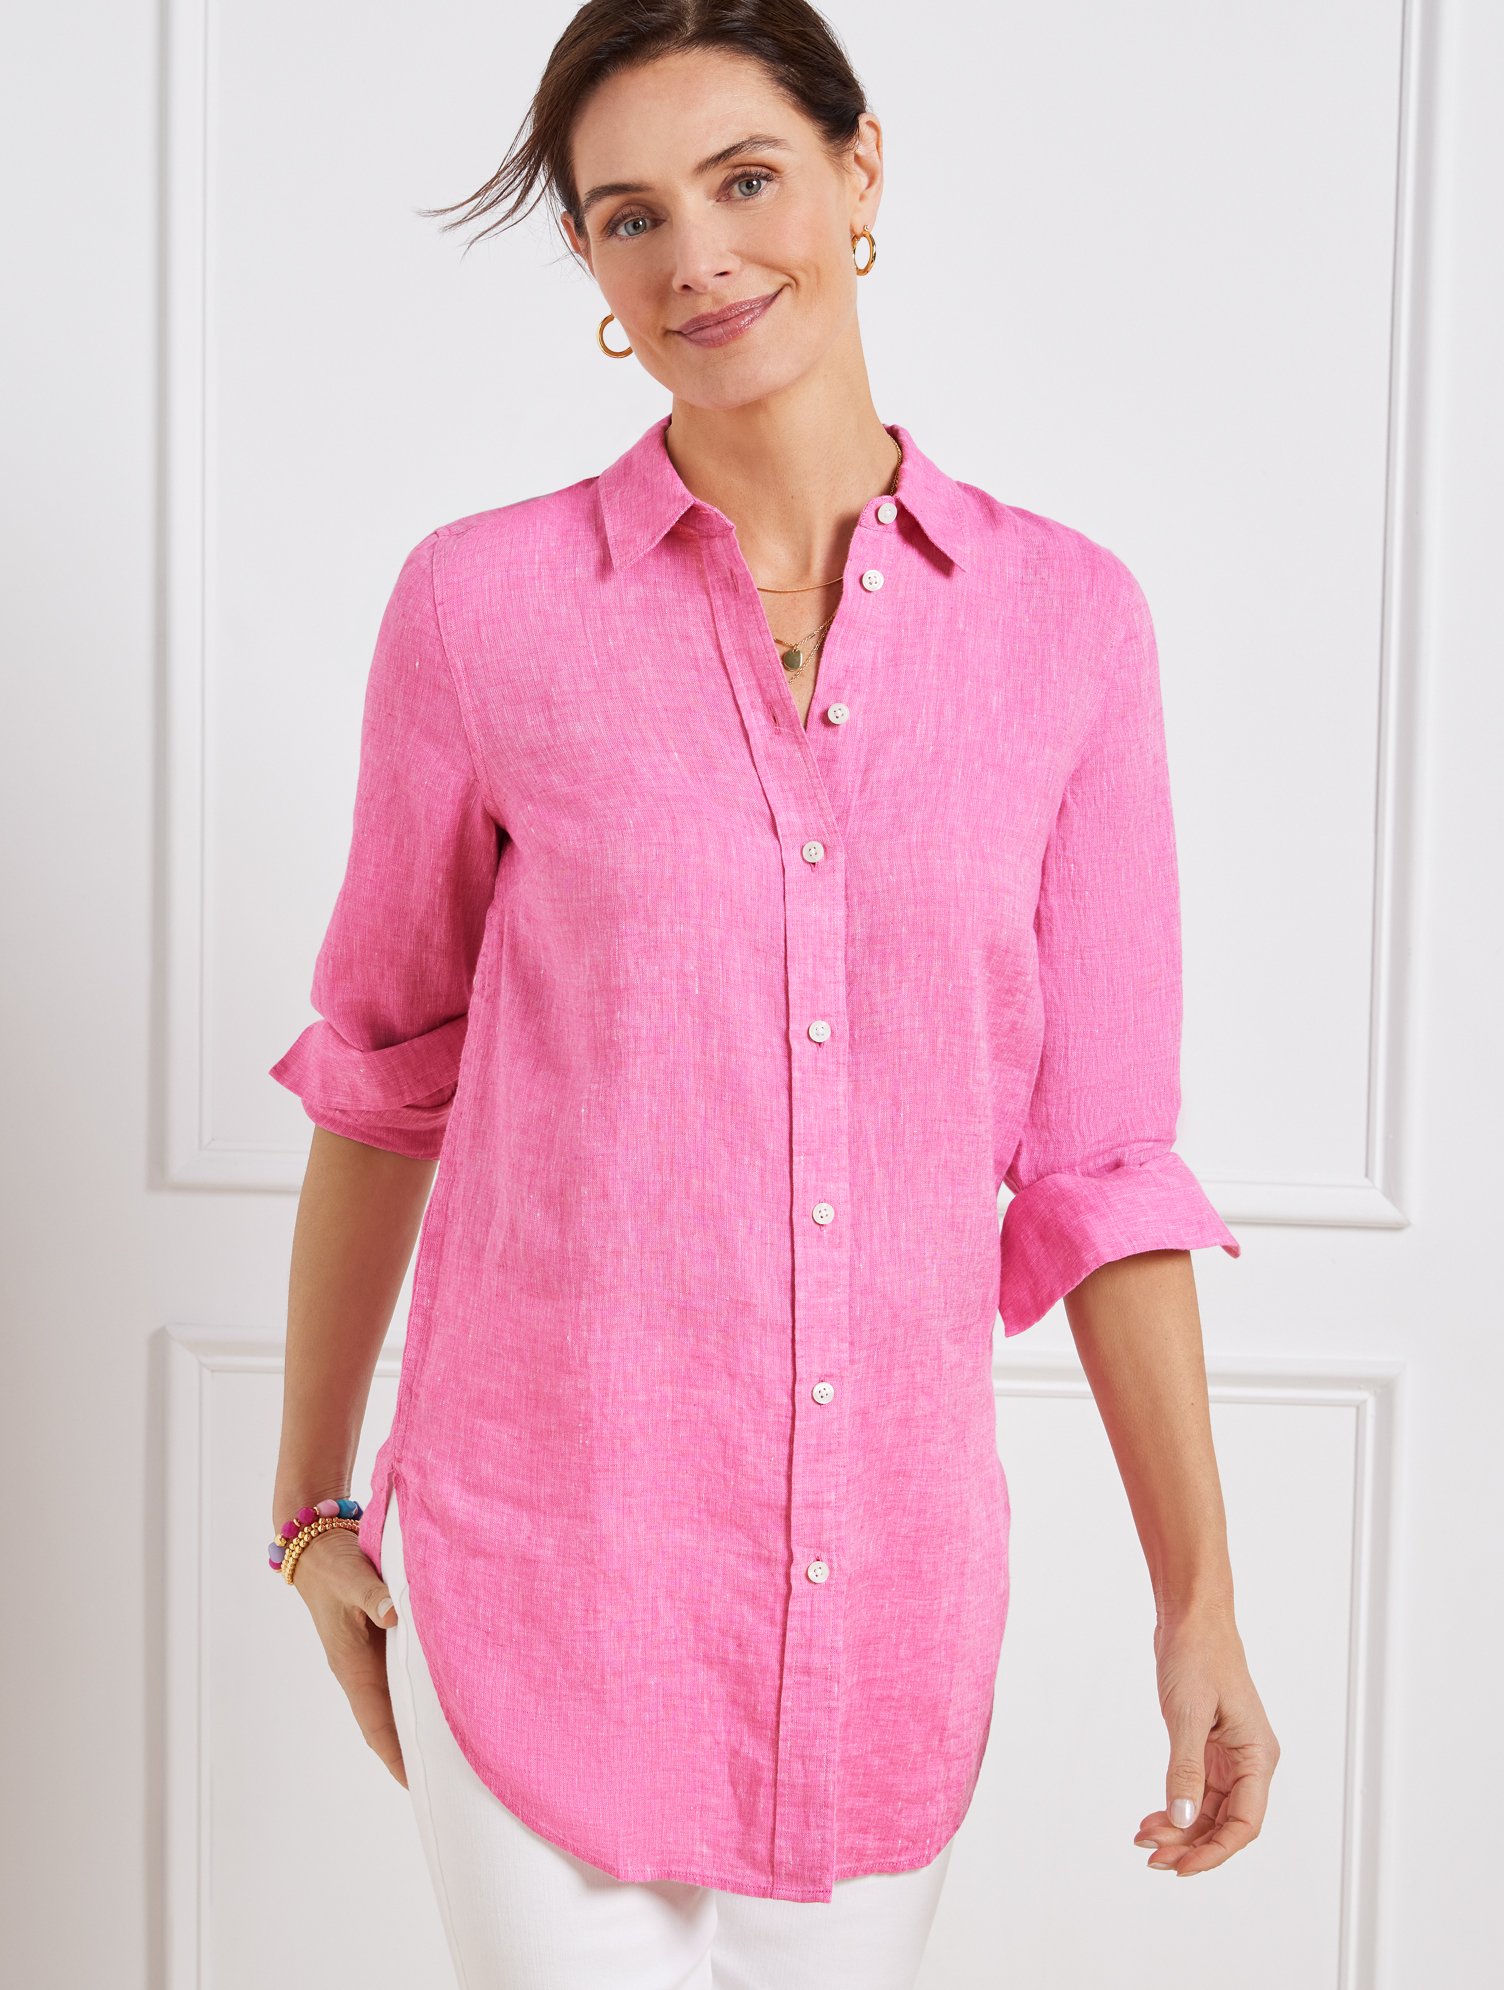 Talbots Linen Boyfriend Shirt - Cross Dye - Pink - 2x